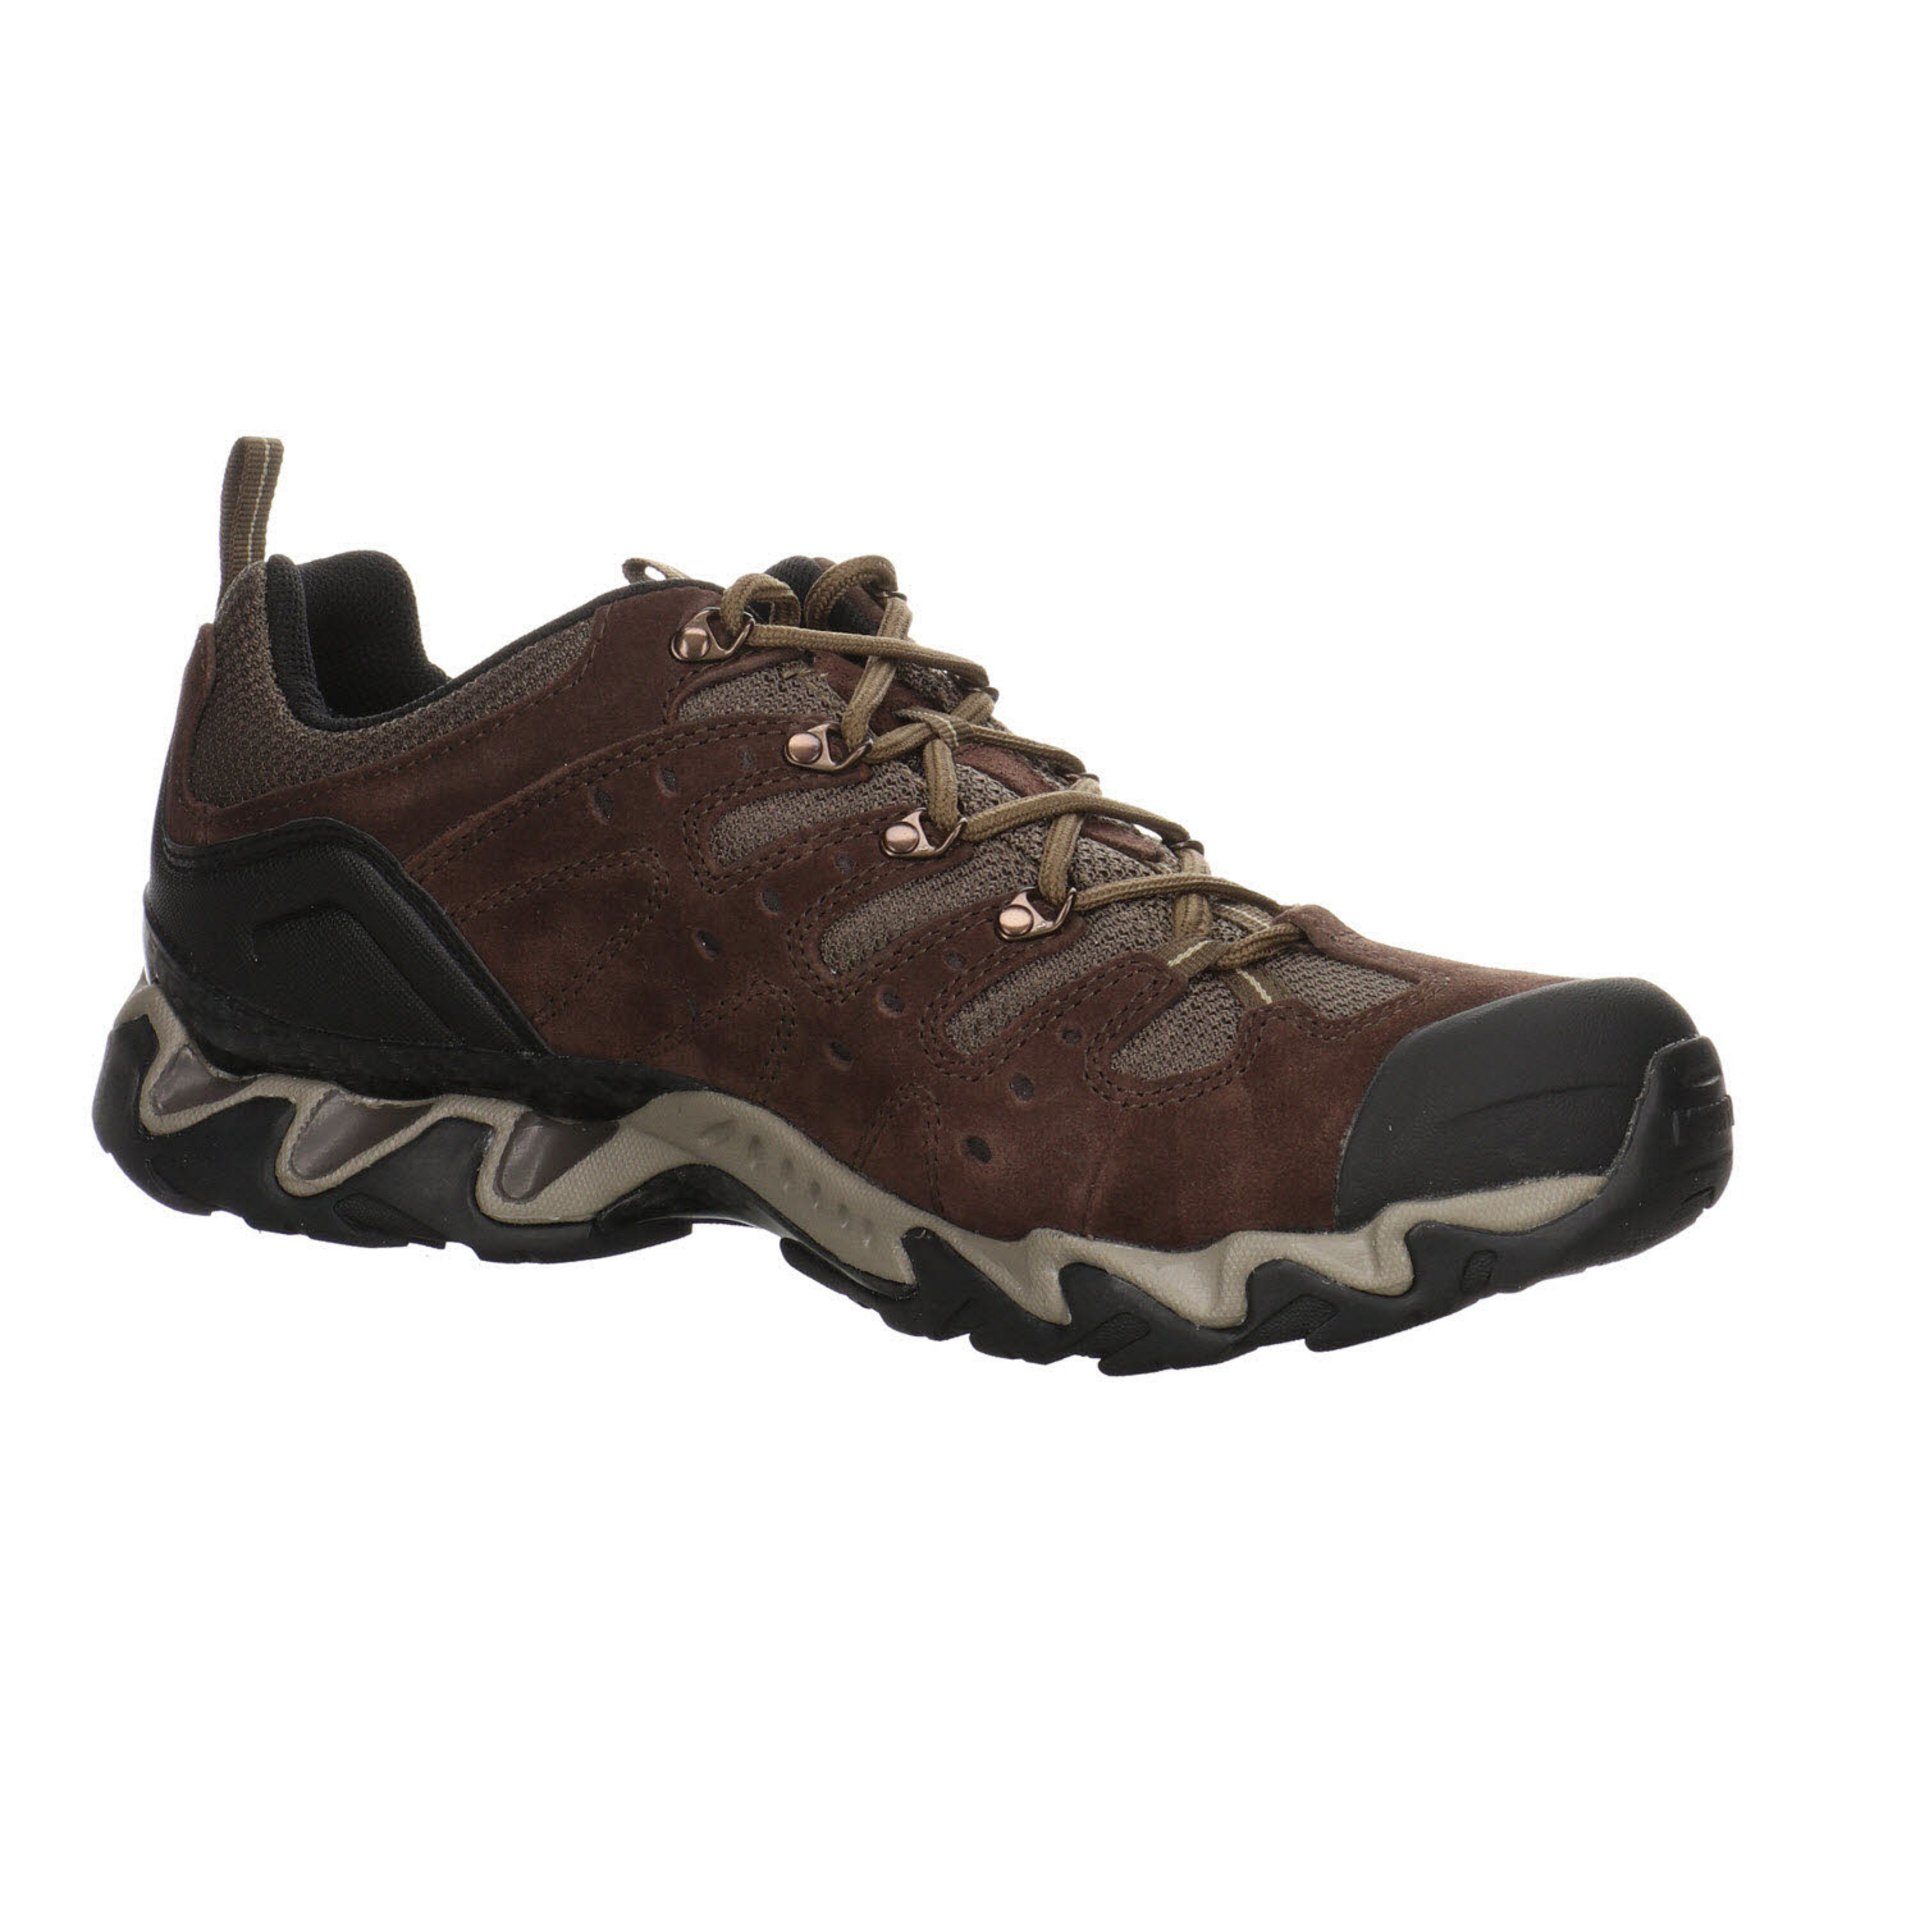 GTX dunkel Outdoorschuh Portland Meindl Outdoorschuh Herren Leder-/Textilkombination Outdoor Schuhe braun